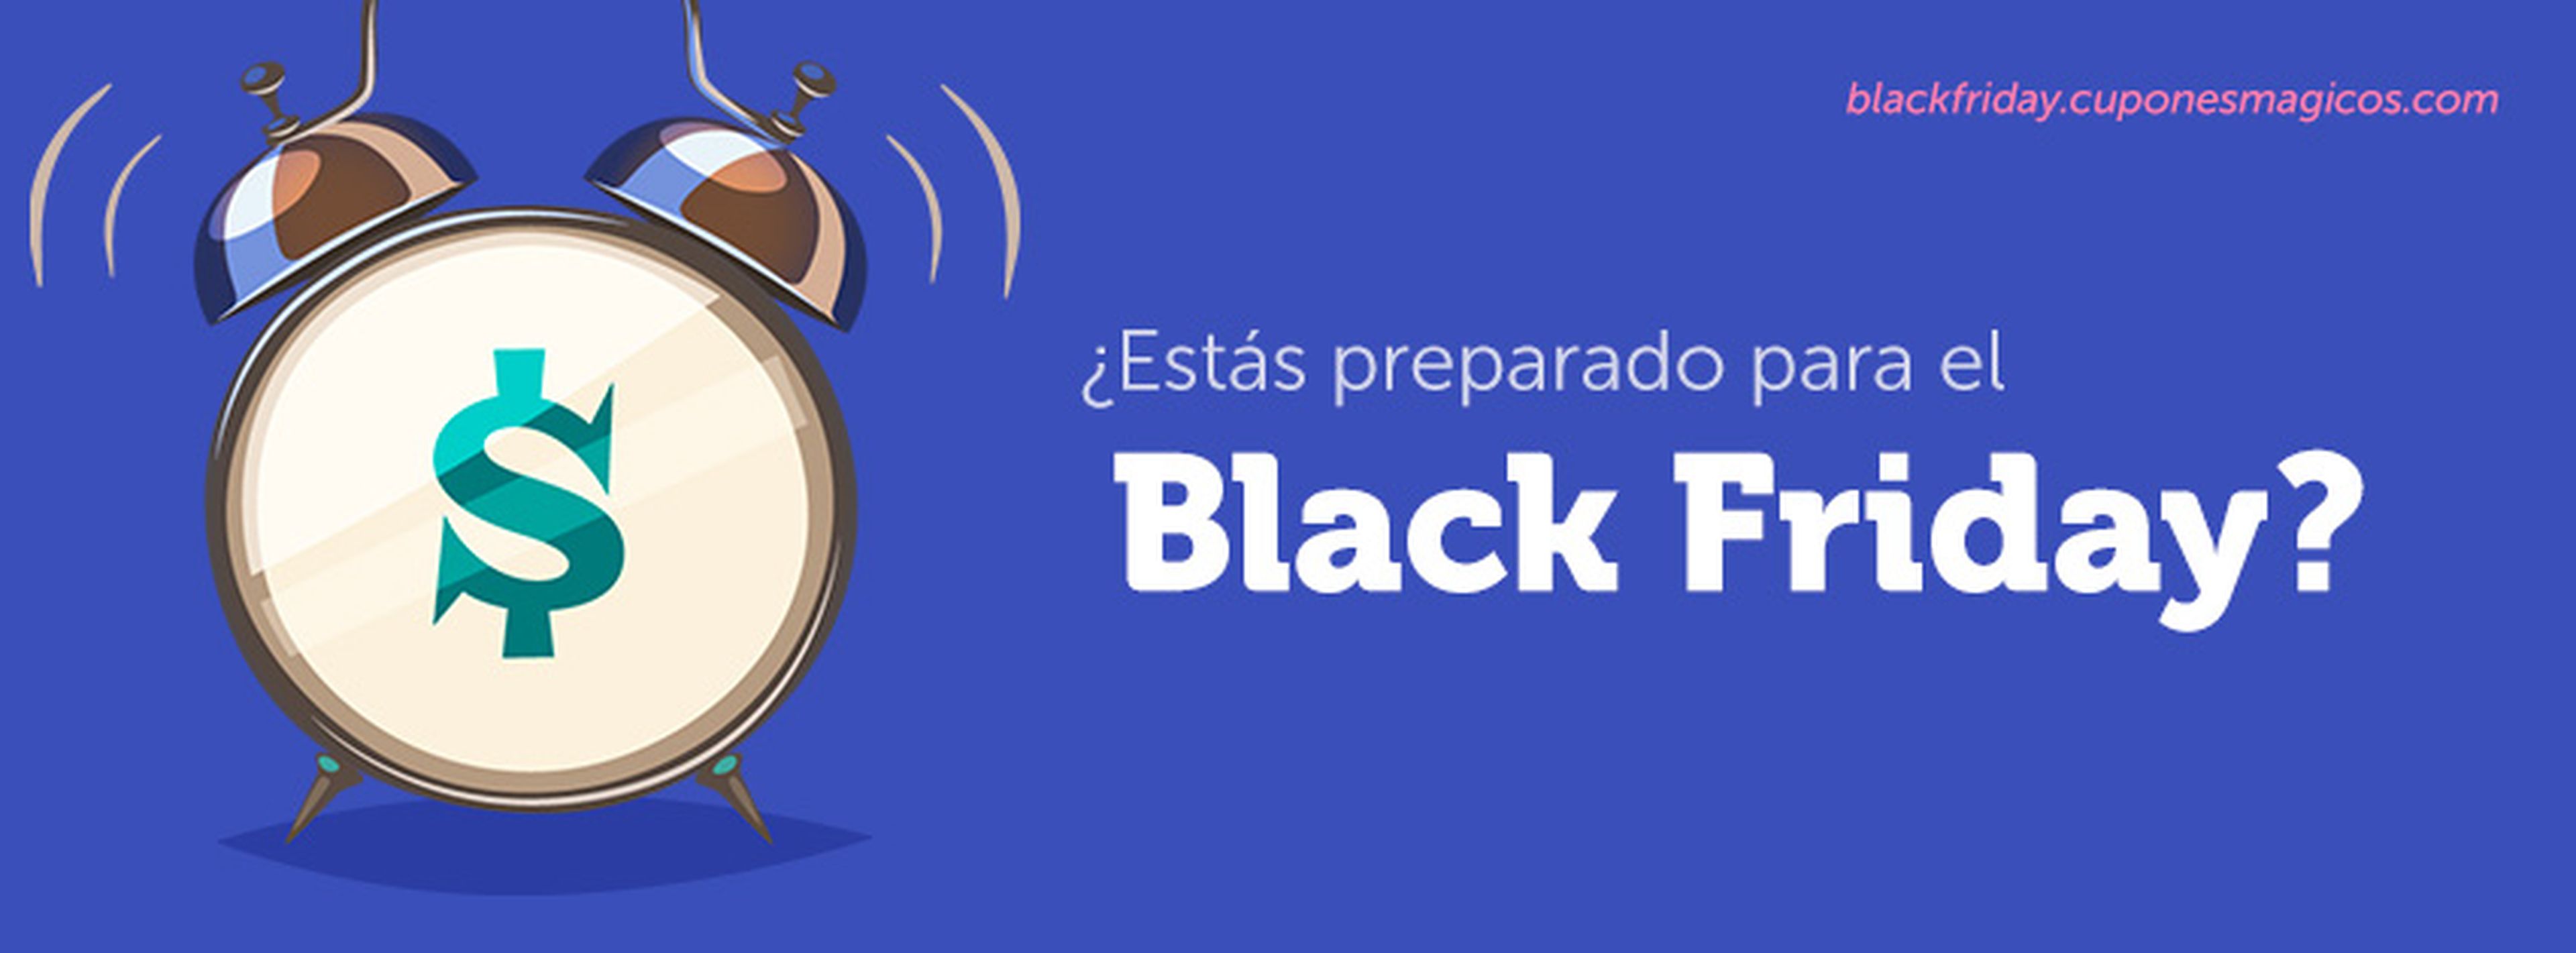 Black Friday 2015: Las mejores ofertas con Cupones Mágicos